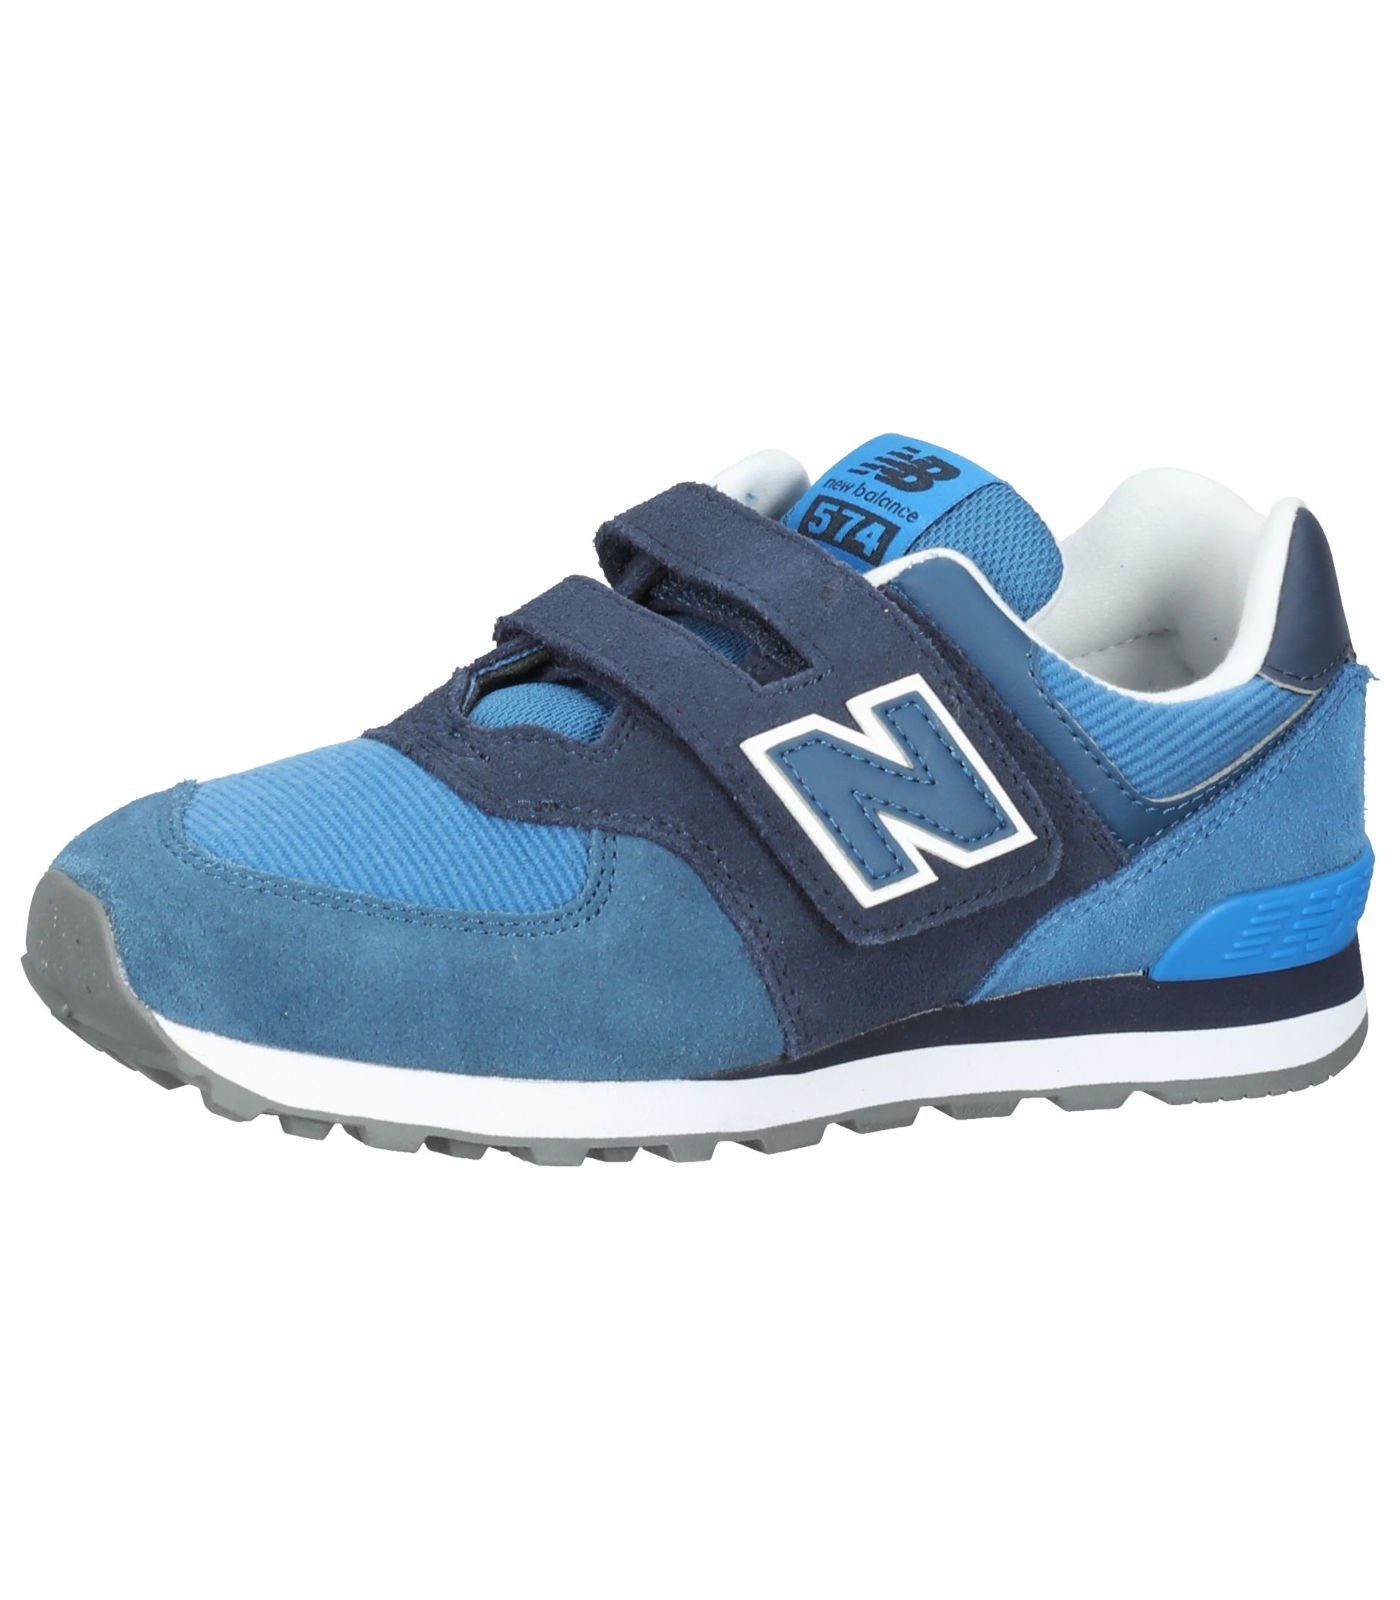 New Balance Veloursleder/Textil Sneaker Blau Sneaker